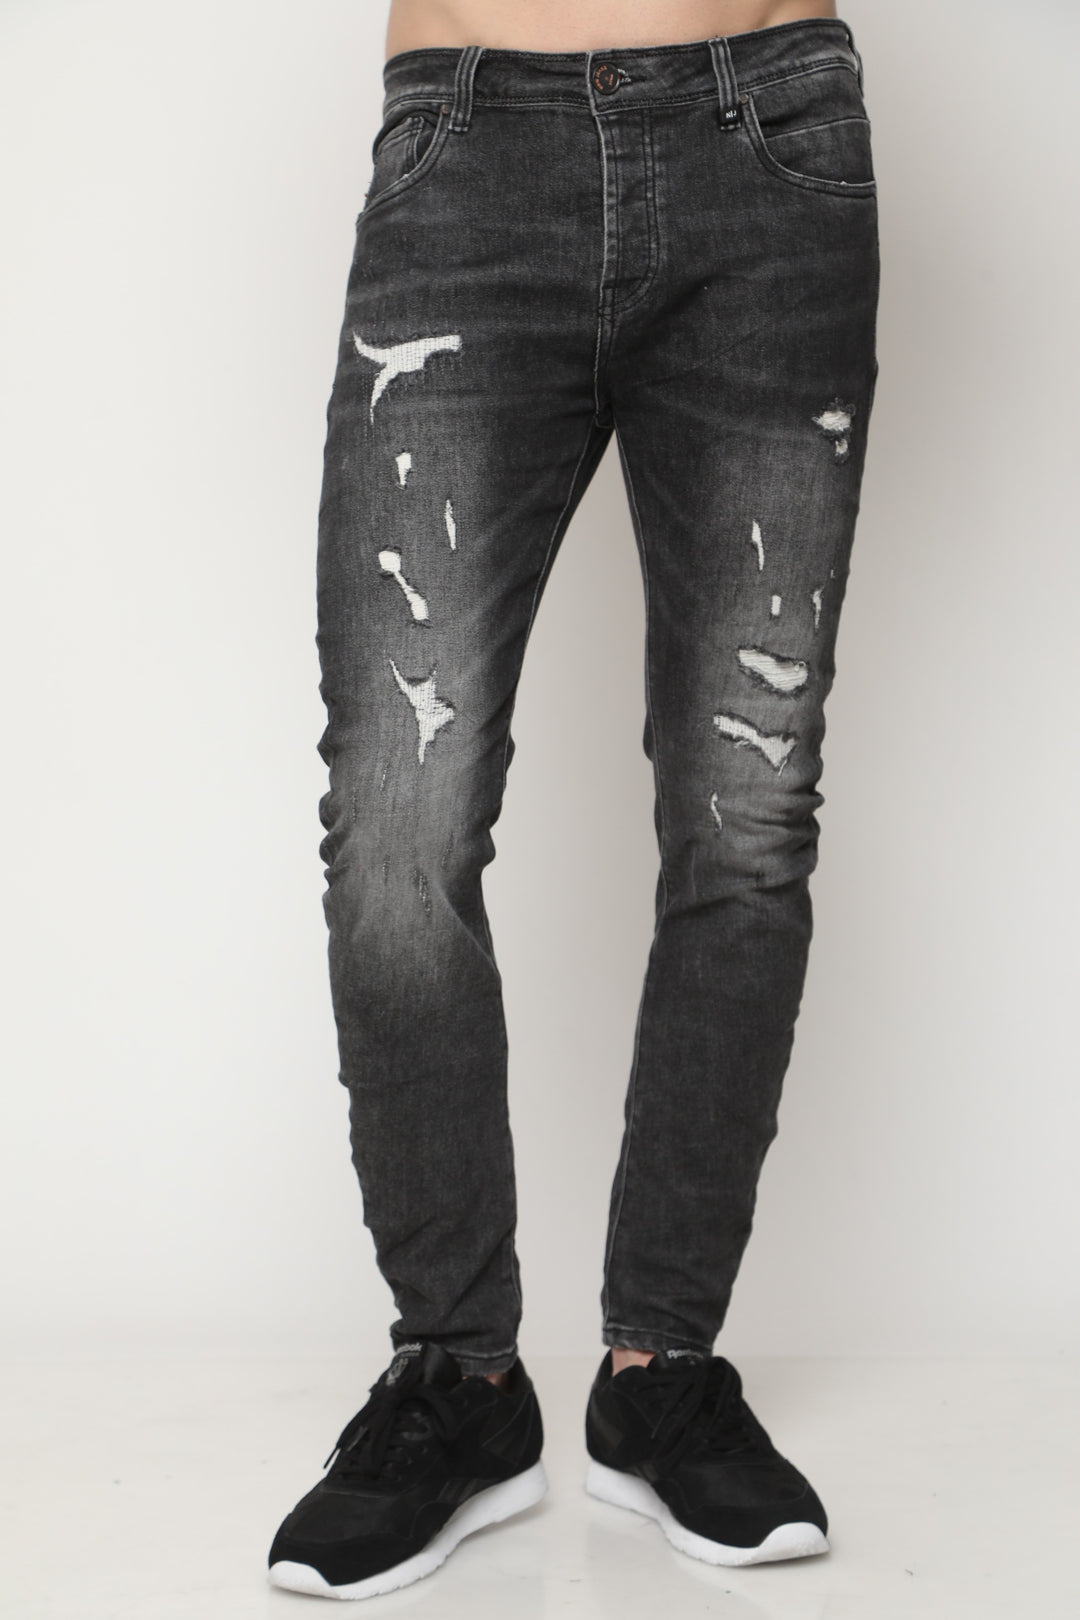 741 ג'ינס סופר סקיני | Canavaro Jeans